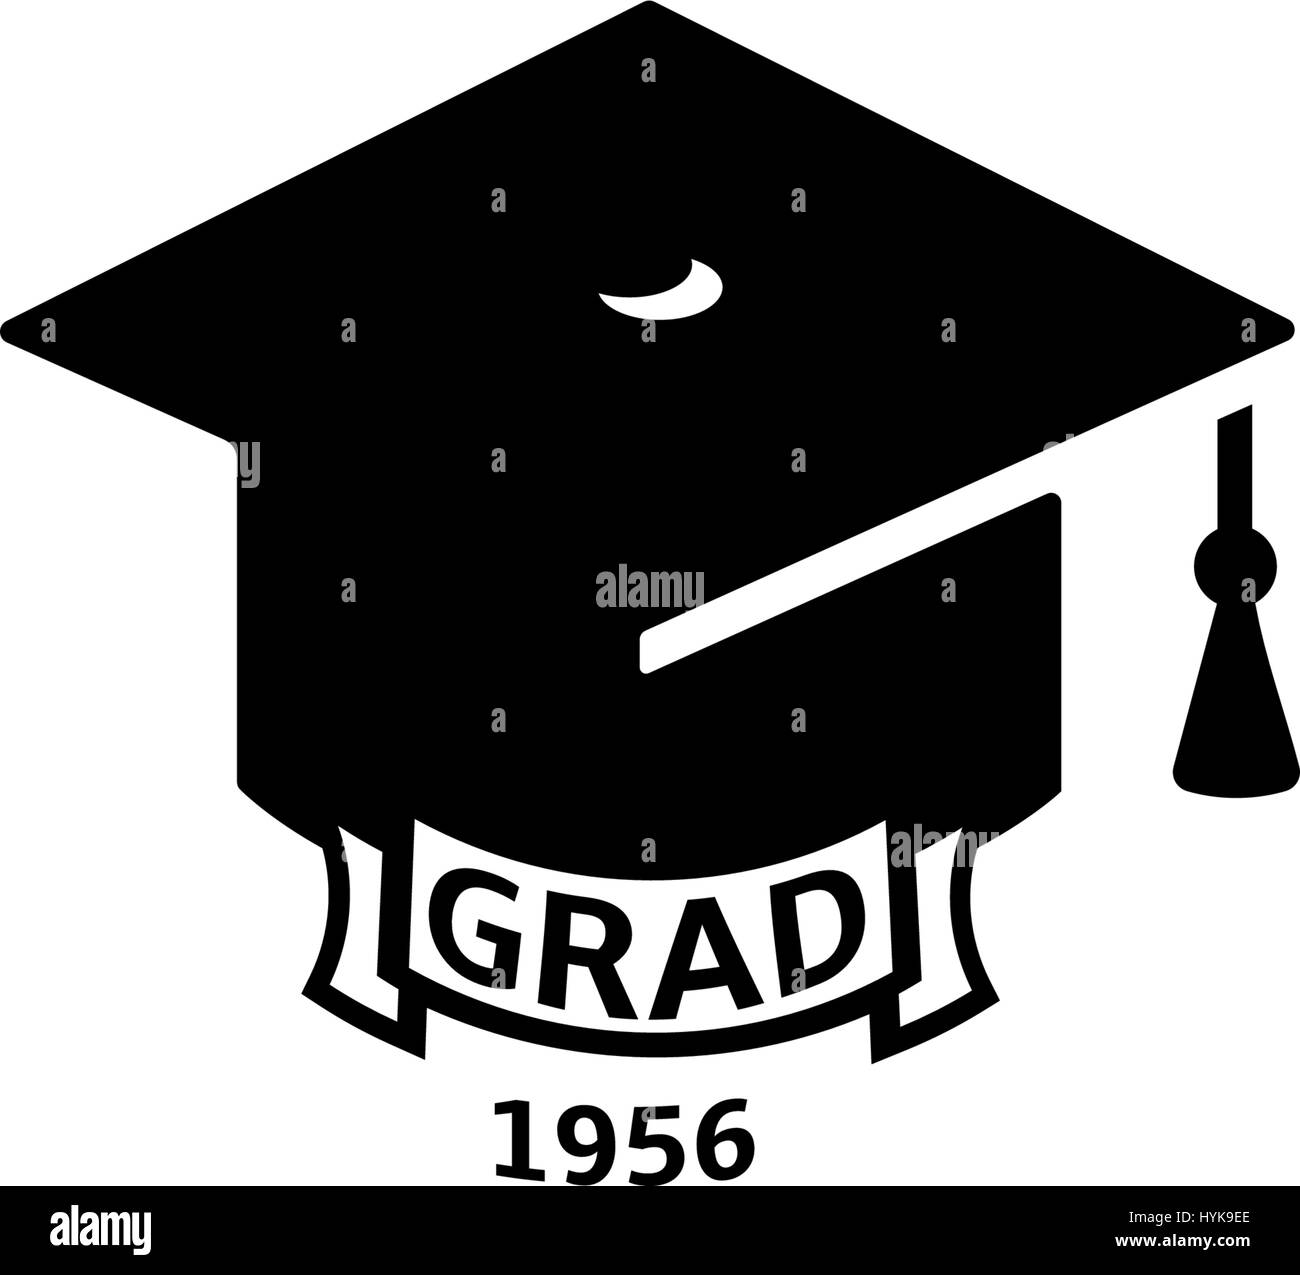 Isolierte schwarze und weiße Farbe Bachelor Hut mit Wort Grad Logo, Studenten Graduierung einheitlichen Logo, Bildung-Element-Vektor-illustration Stock Vektor